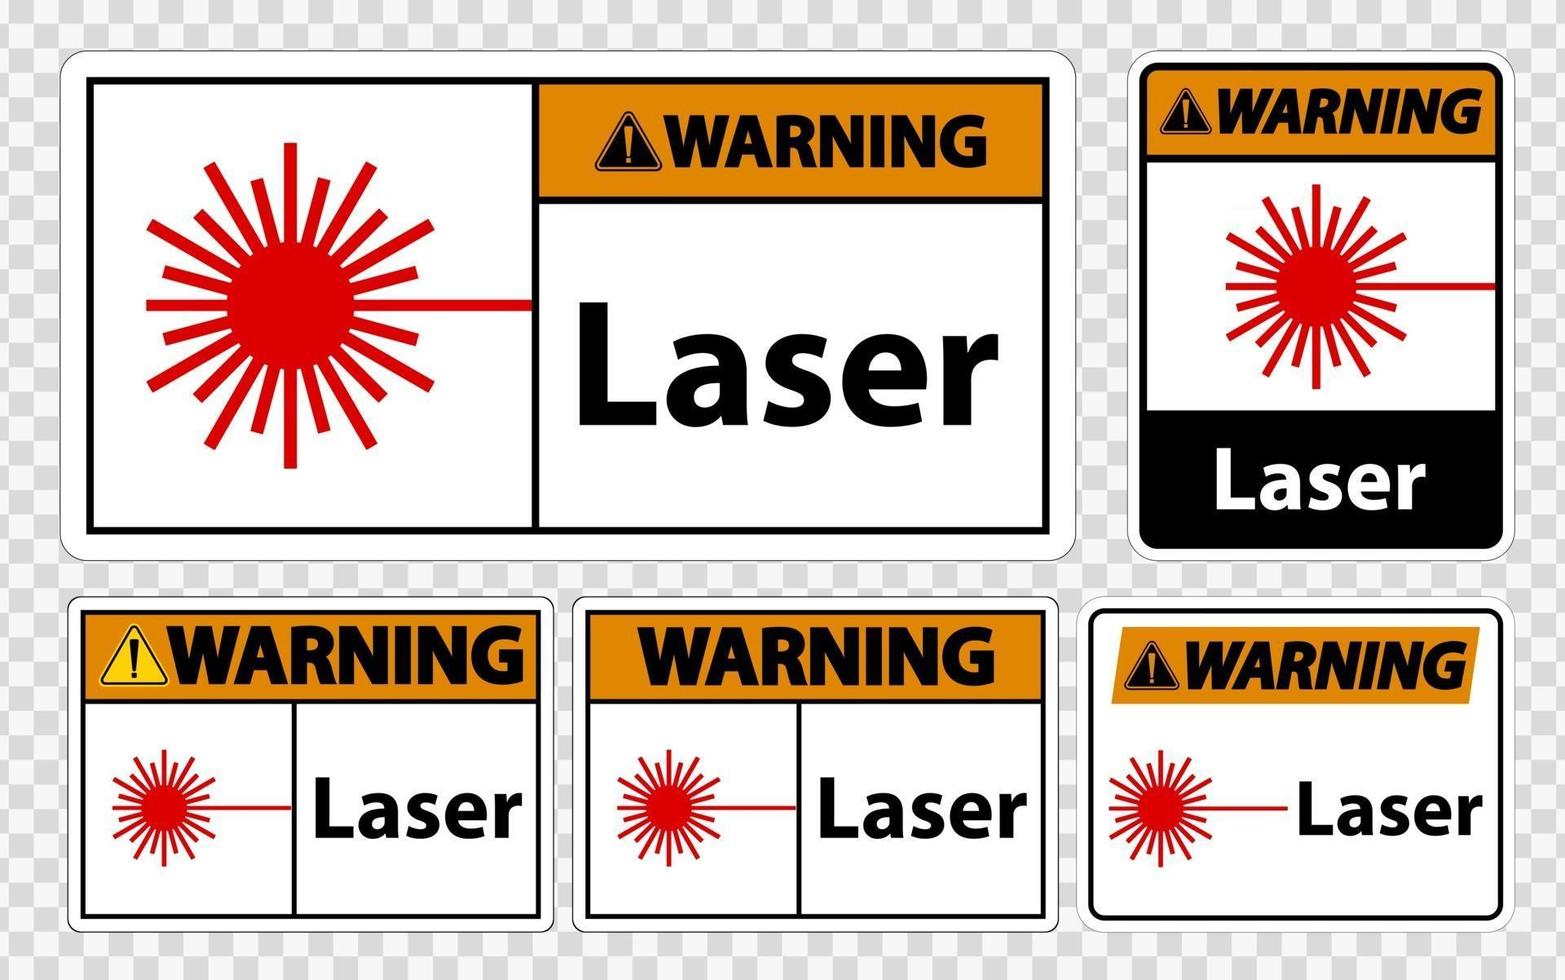 Warnlasersymbolzeichen Symbolzeichen isolieren auf transparentem Hintergrund vektor